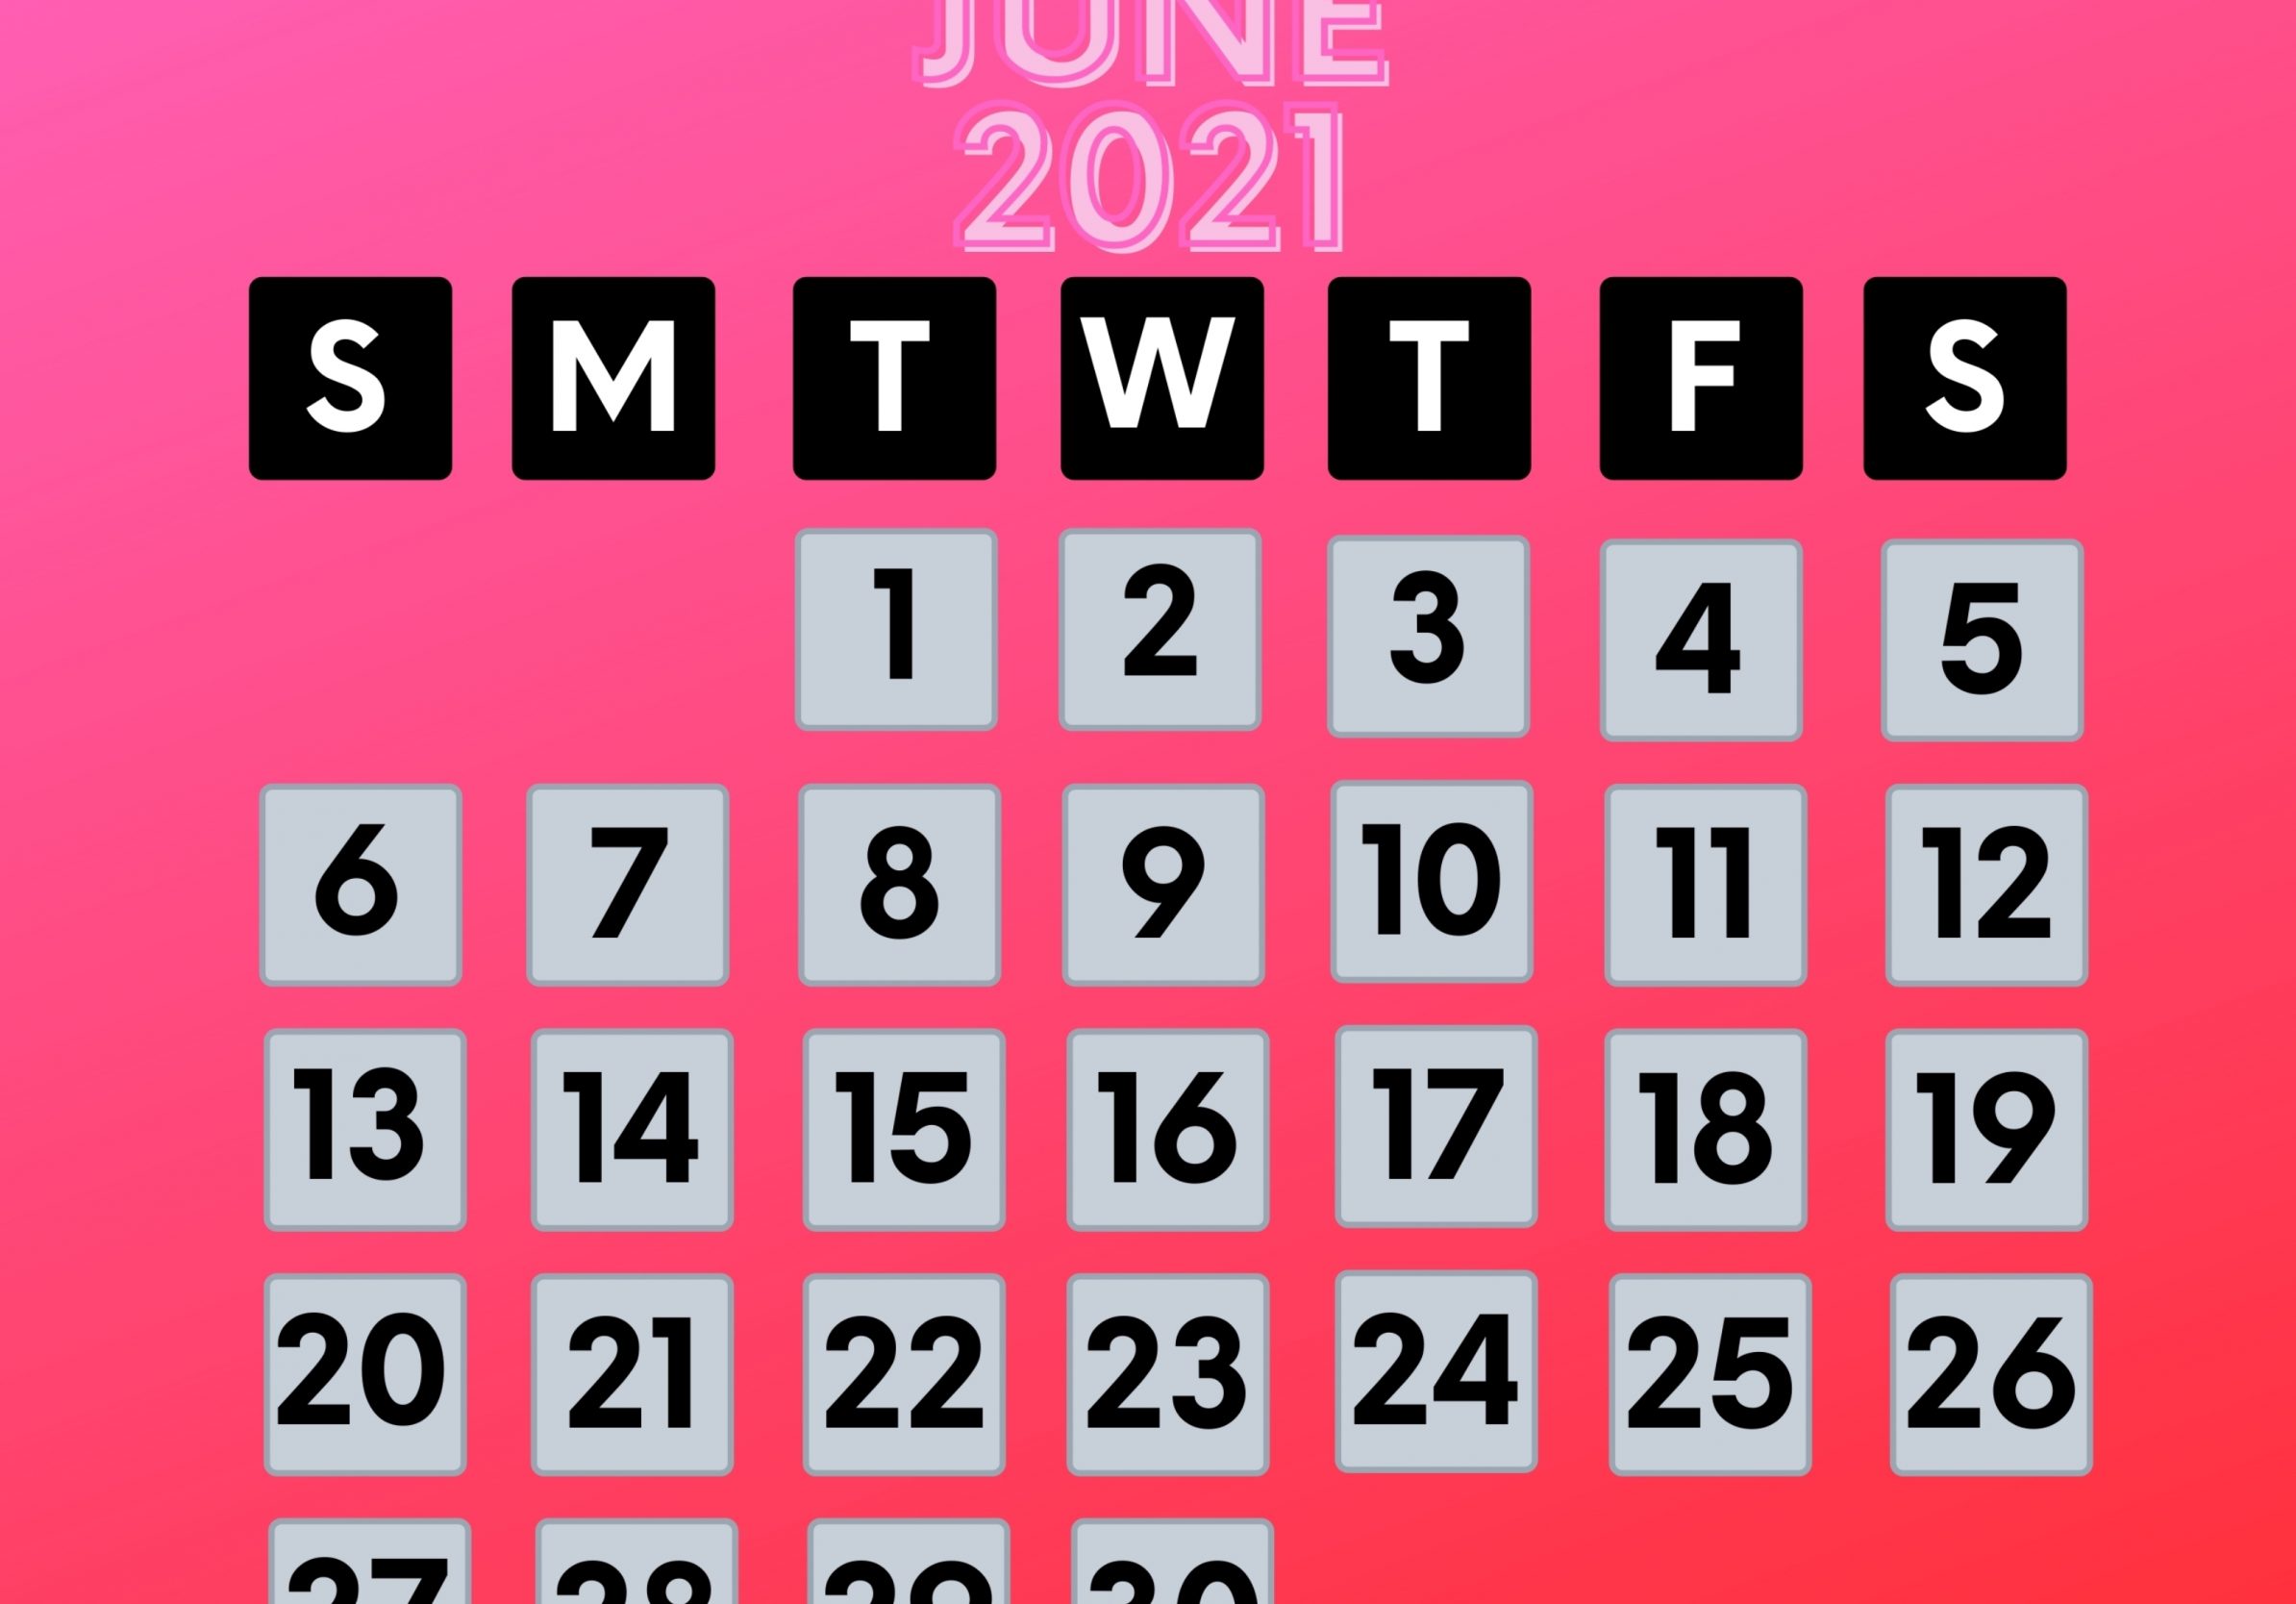 2388x1668 iPad Pro wallpapers June 2021 Calendar iPad Wallpaper 2388x1668 pixels resolution